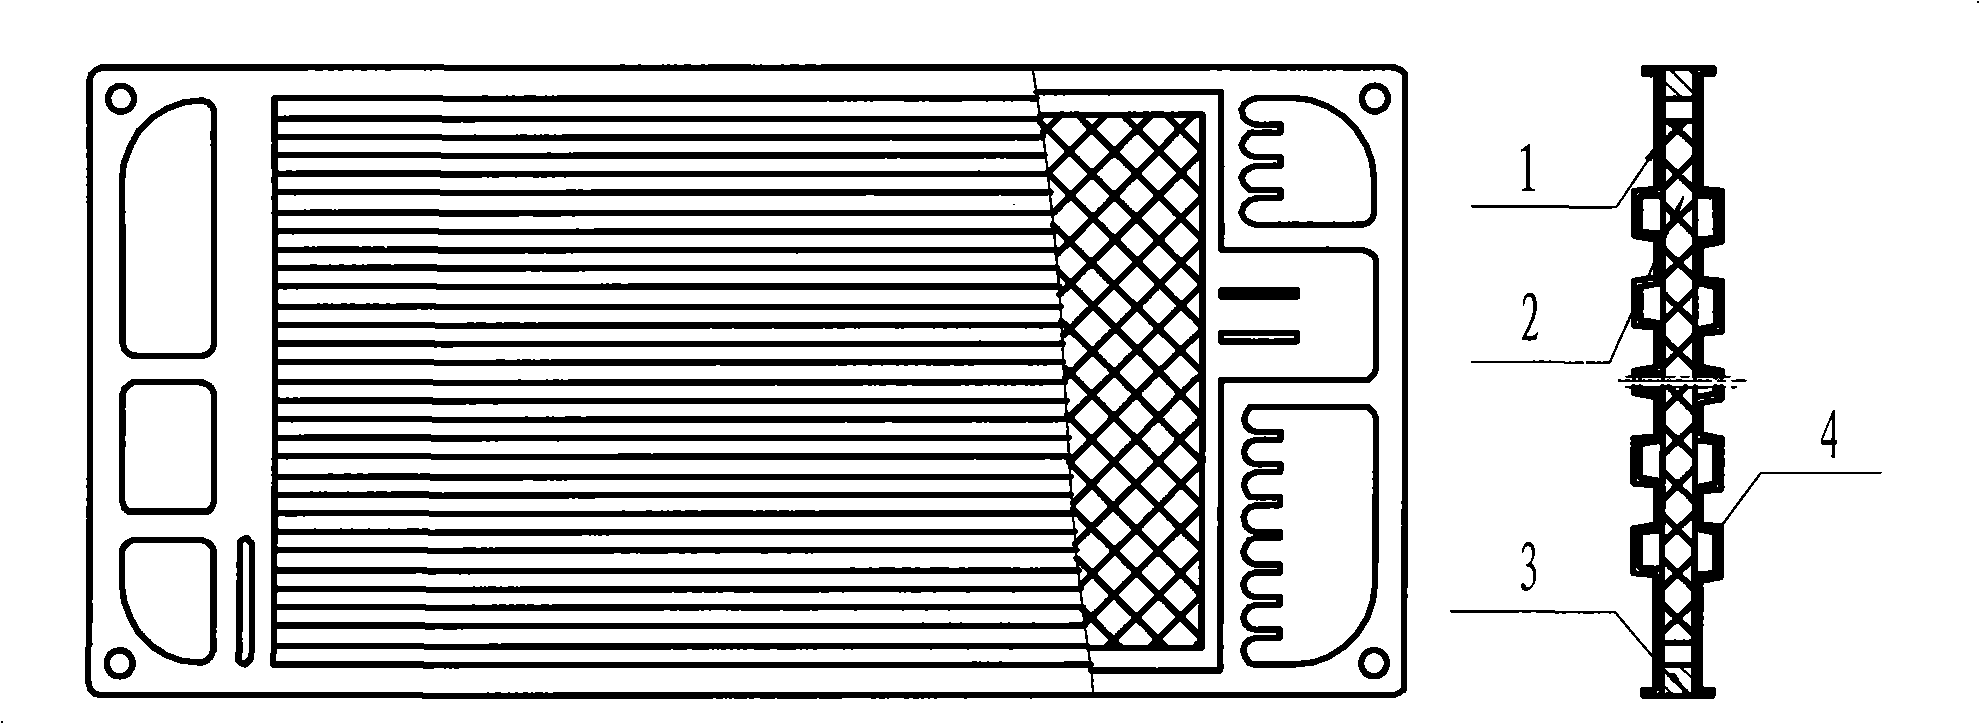 Metallic bipolar plate shaped by sheet-metal press working